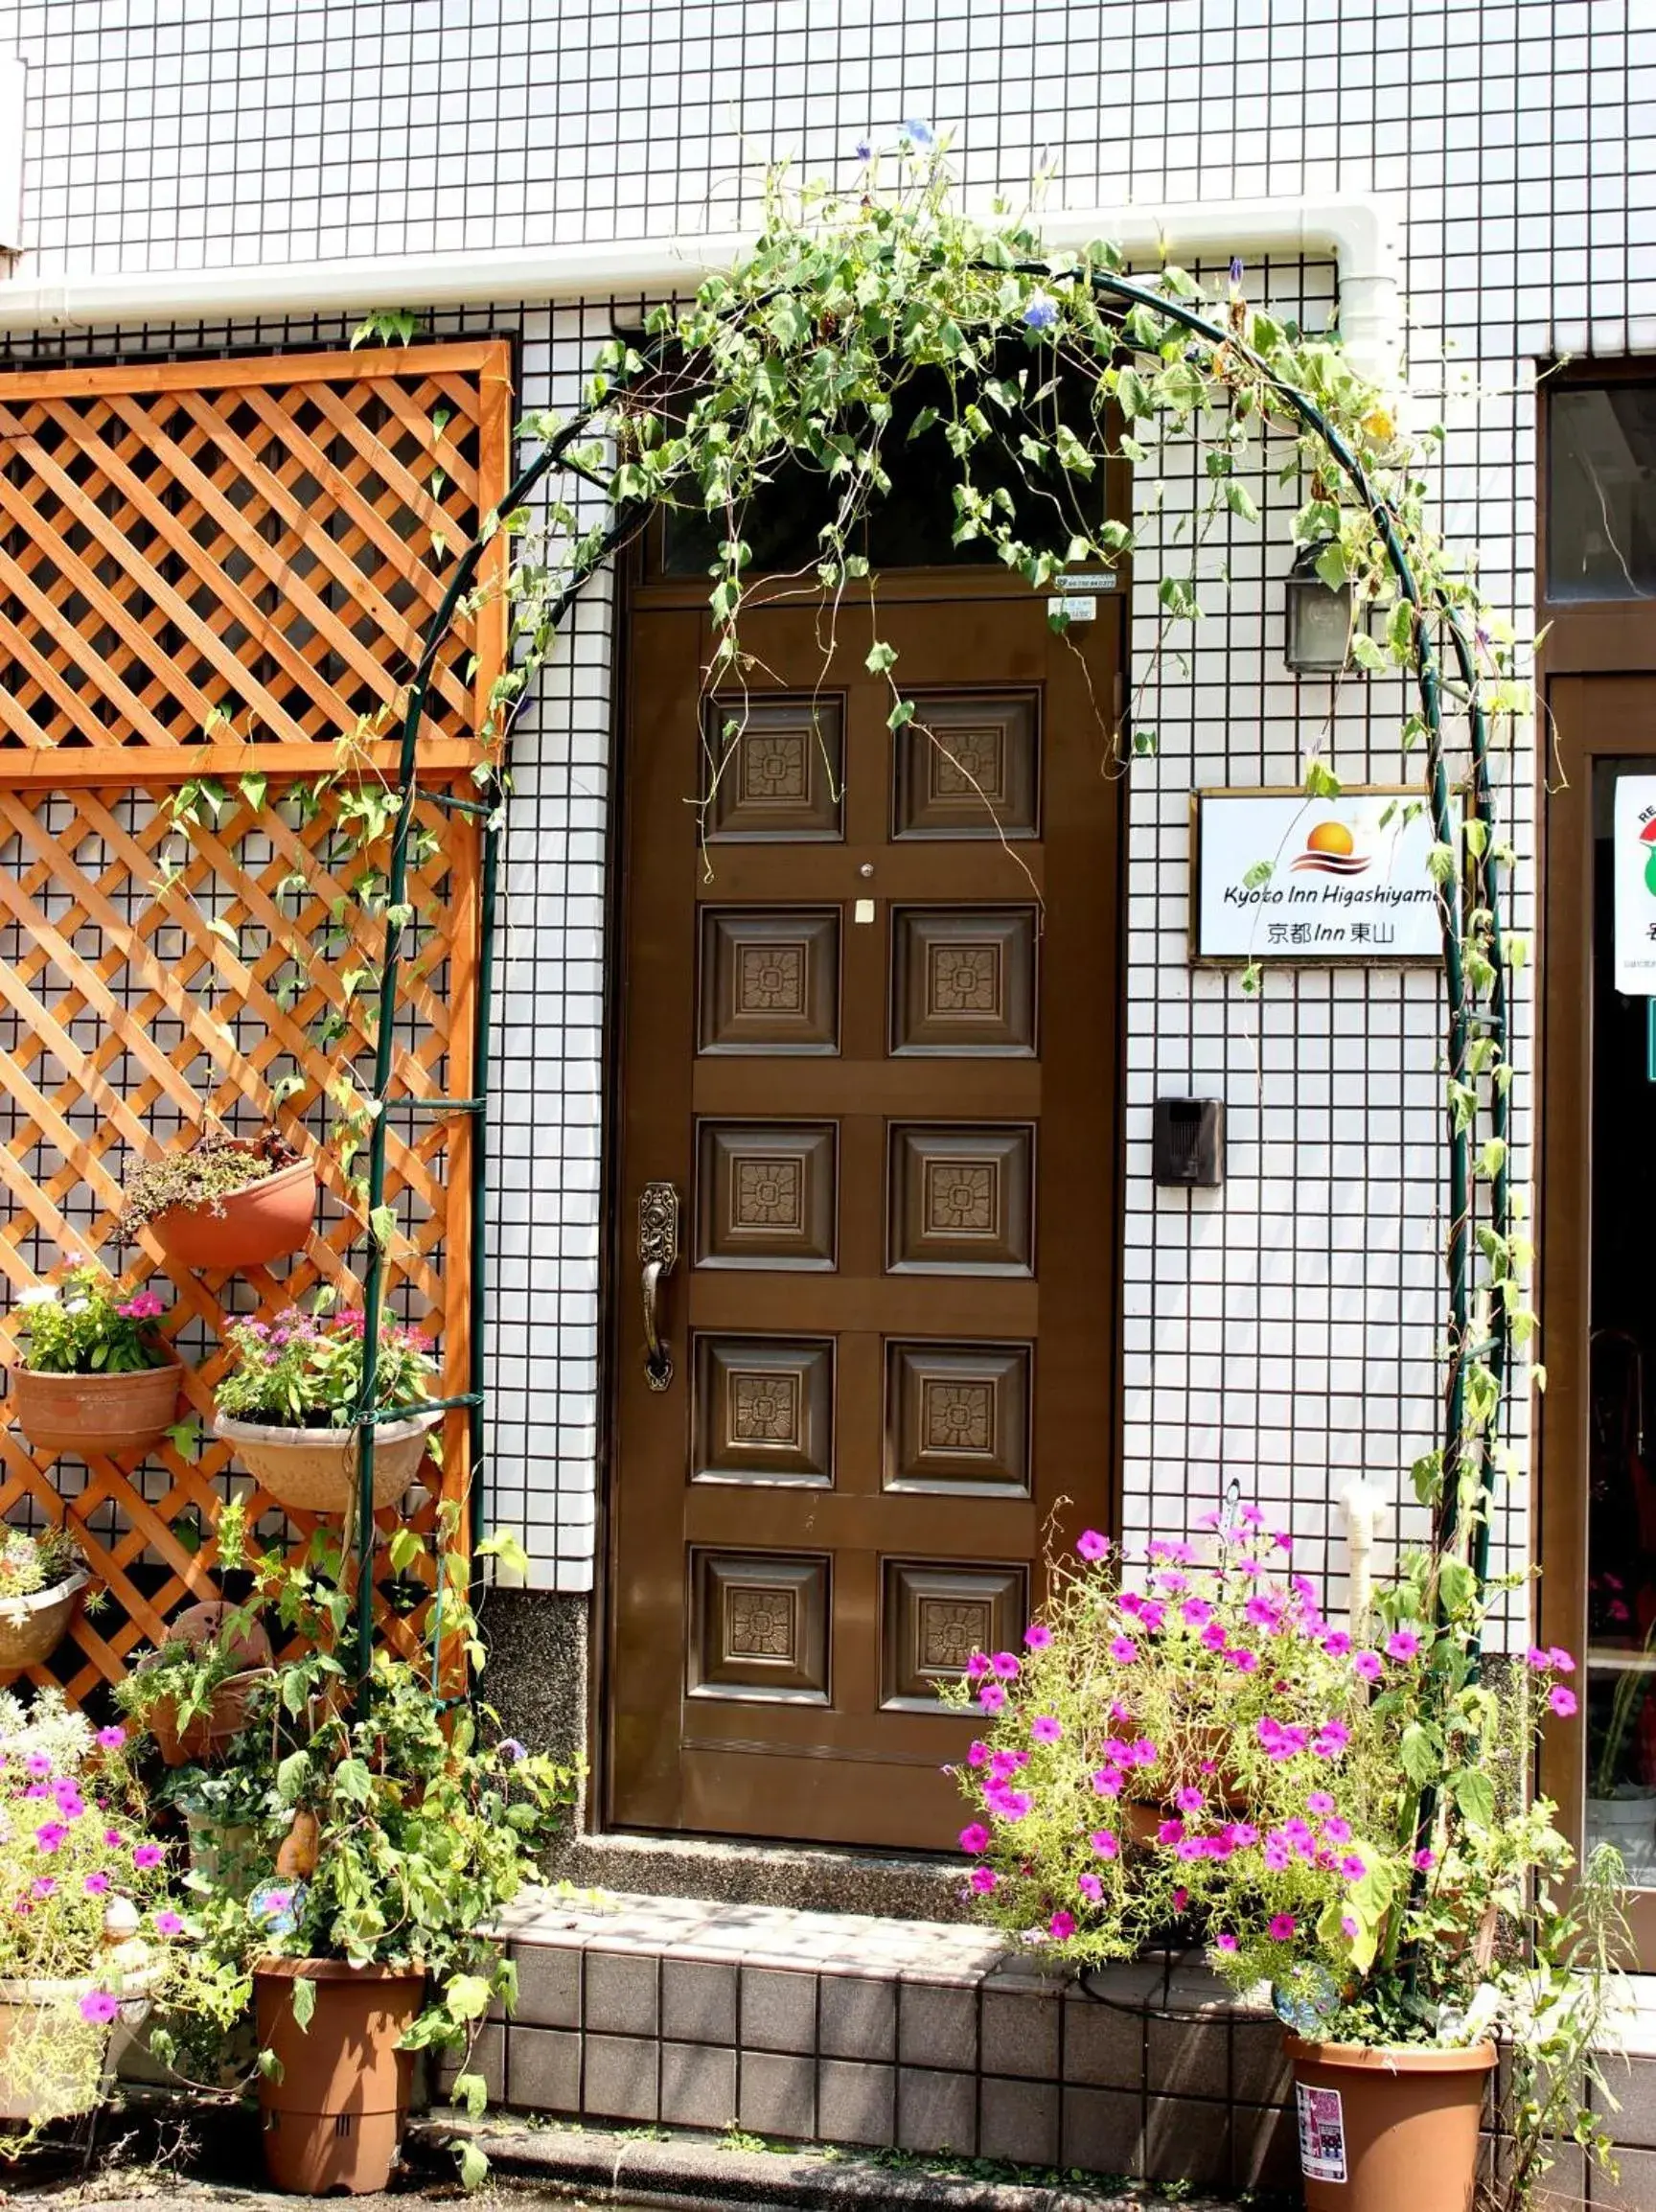 Facade/entrance in Kyoto Inn Higashiyama